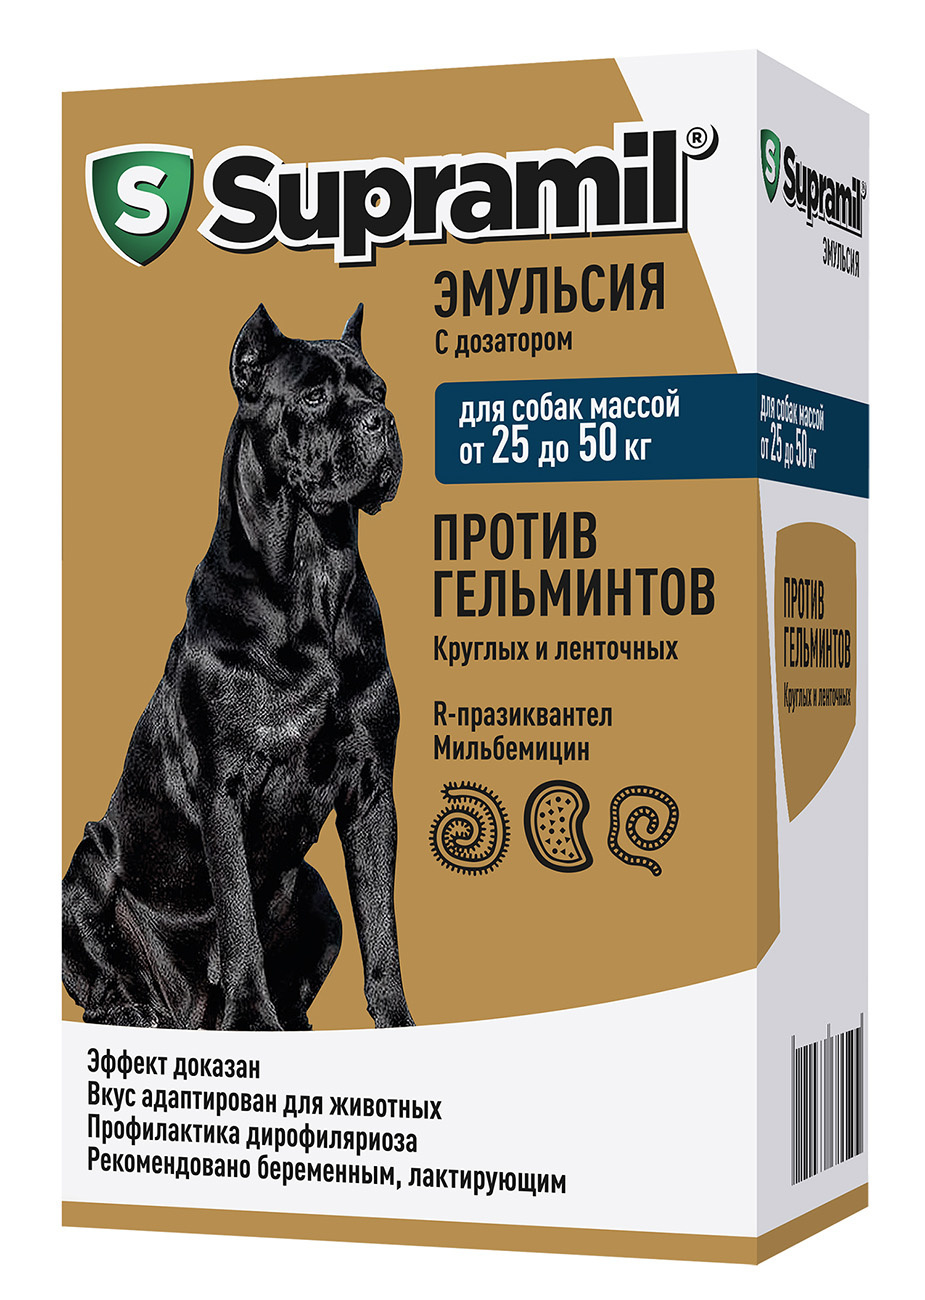 Астрафарм Астрафарм супрамил эмульсия для собак массой от 25 до 50 кг (77 г)